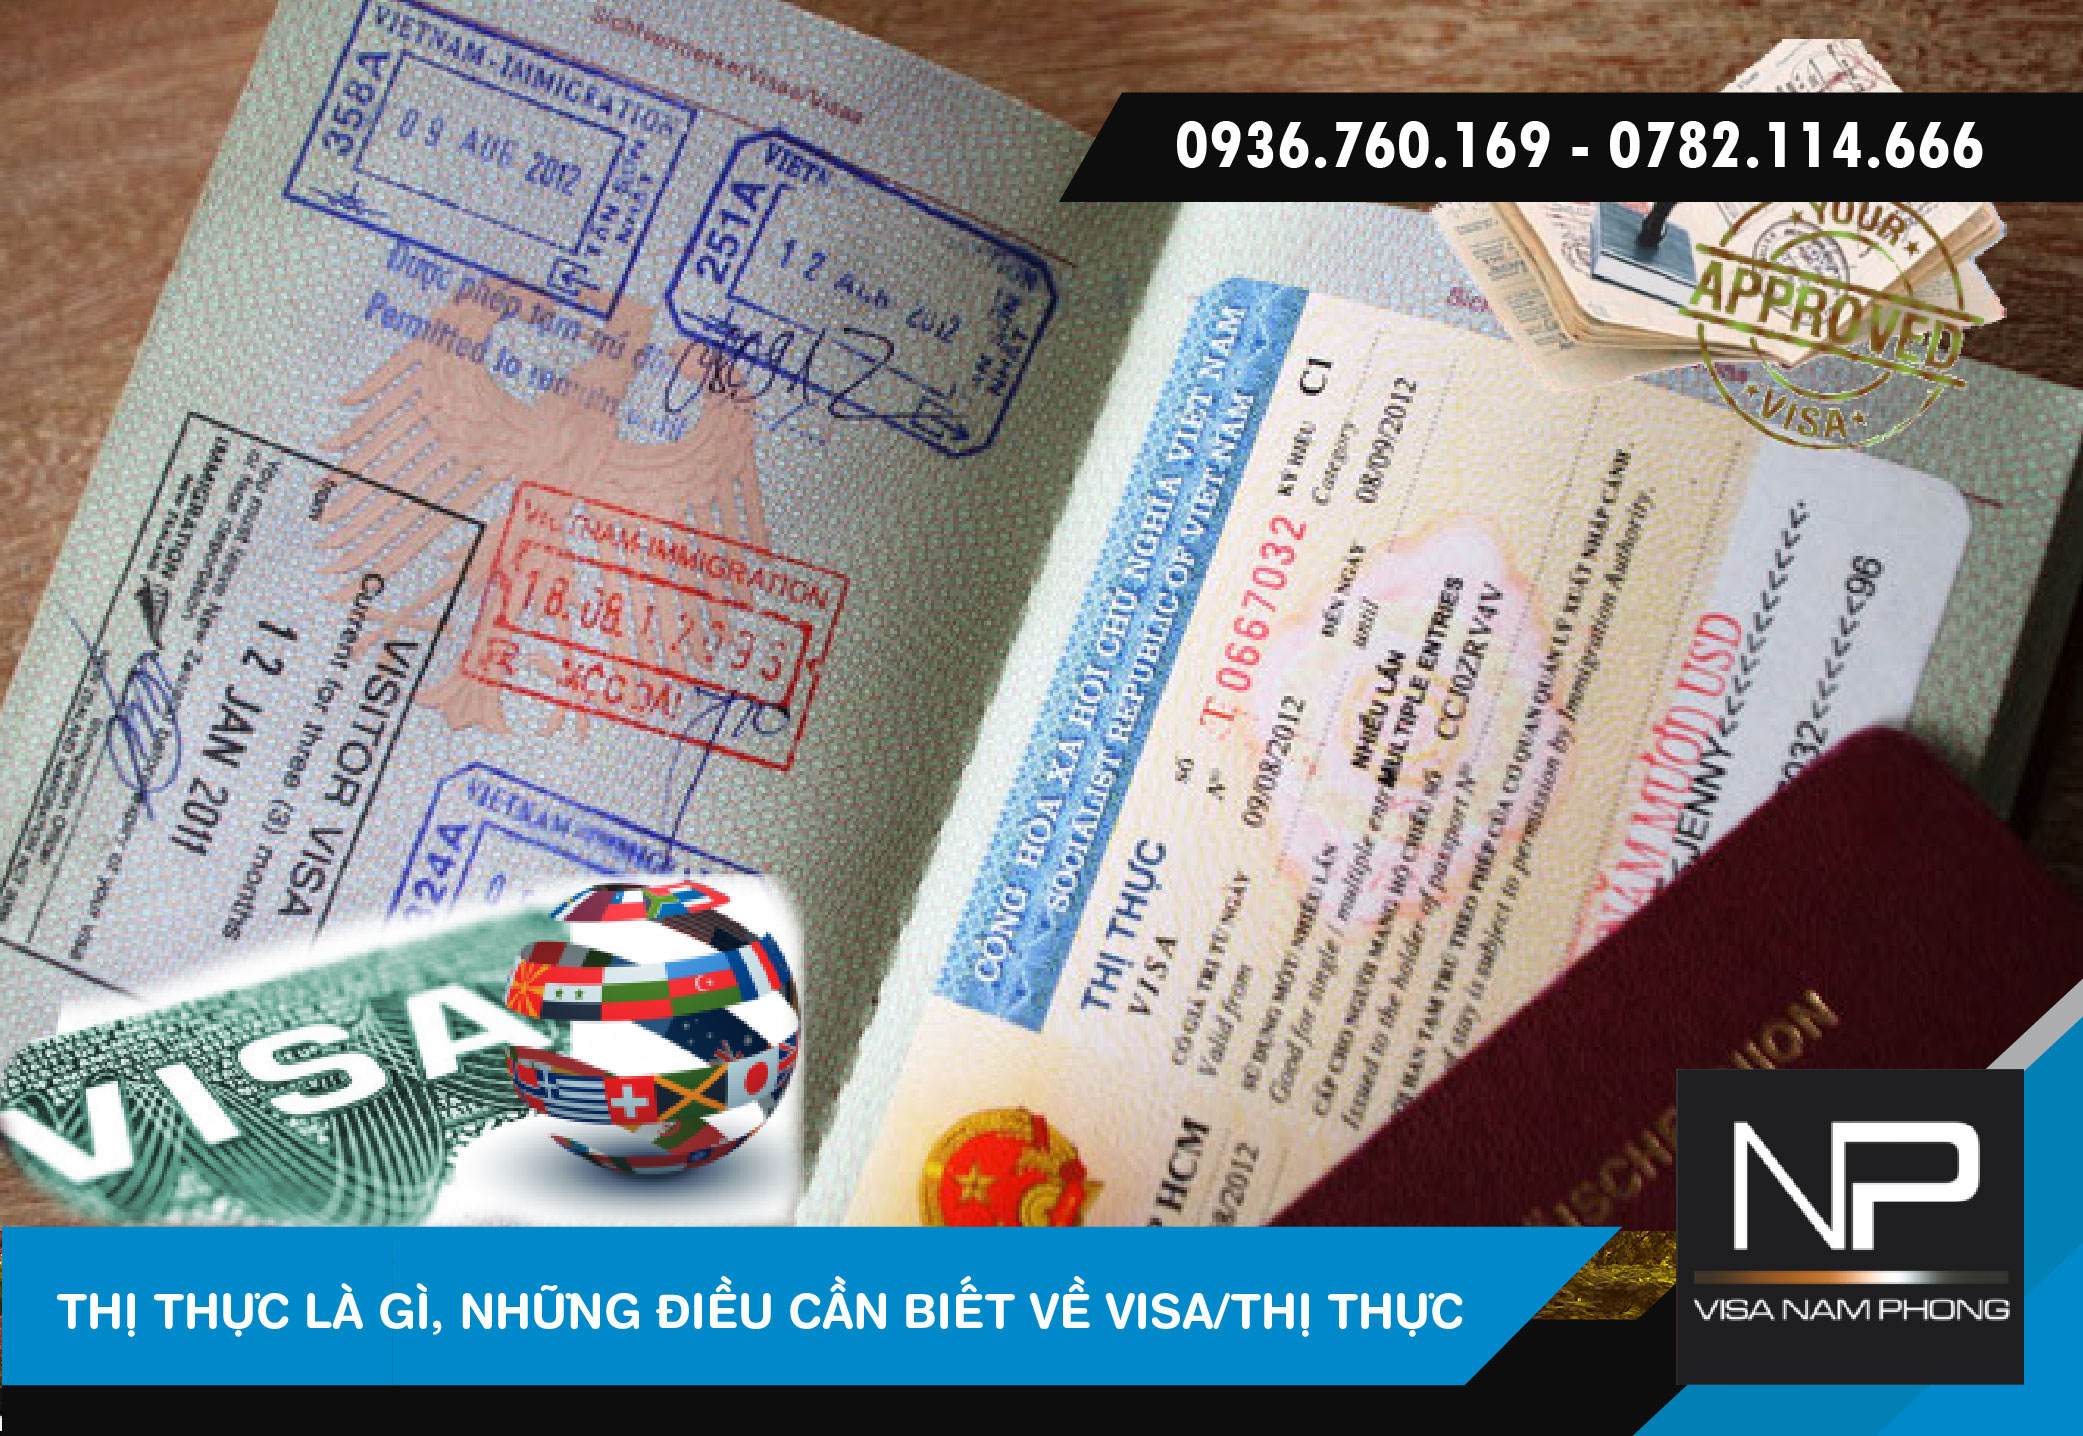 Thông tin về Visa/Thị thực chỉ có tại Hải Phòng